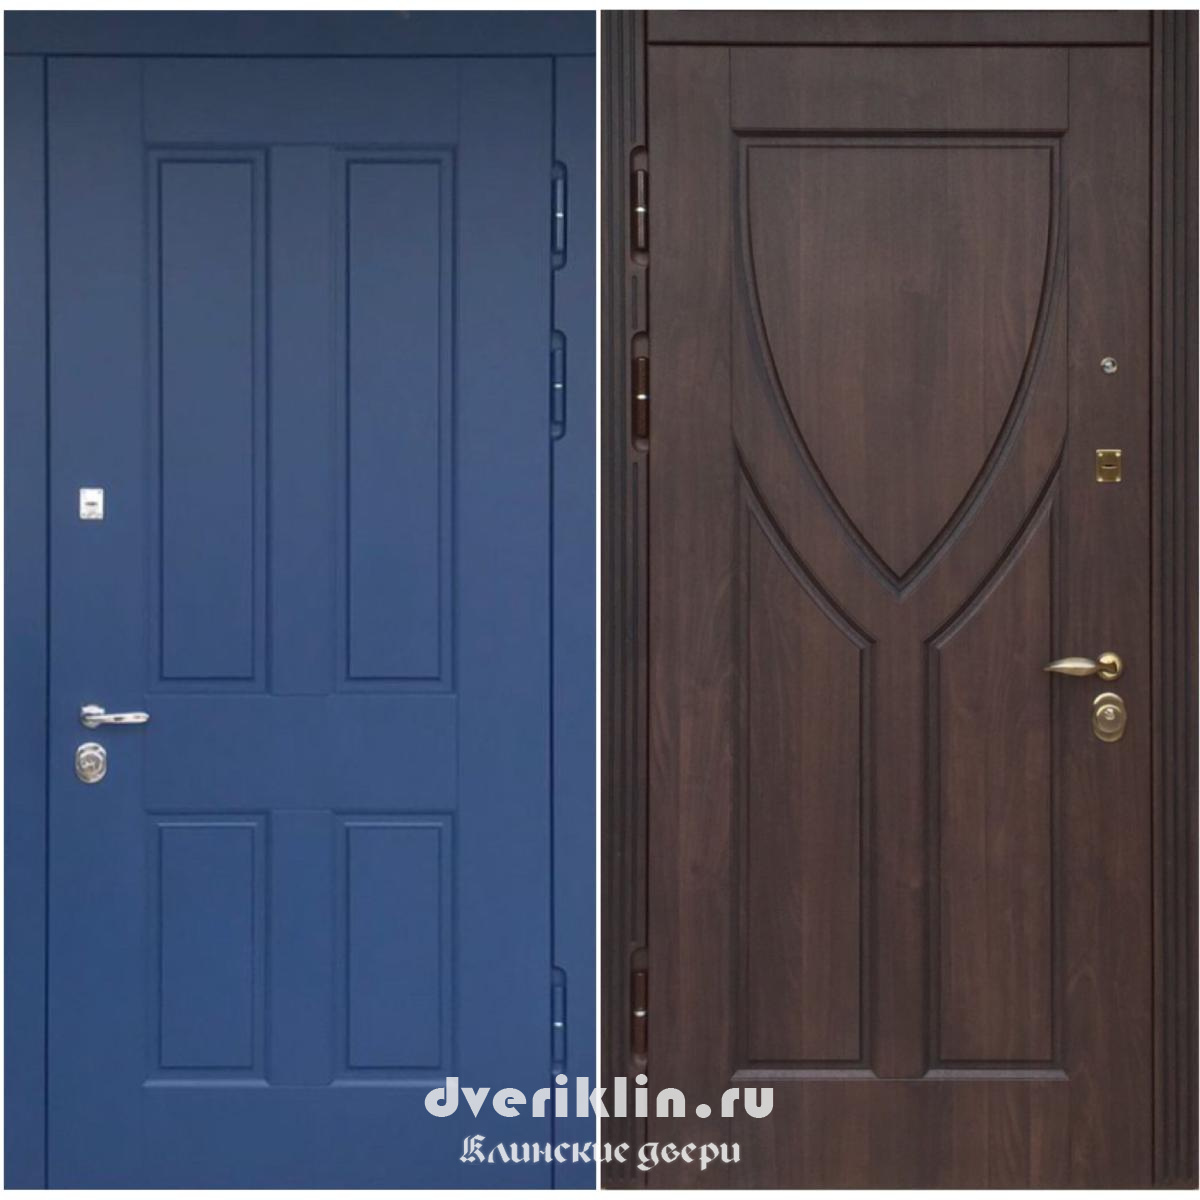 Дверь в дом MDD-54 (В частный дом)